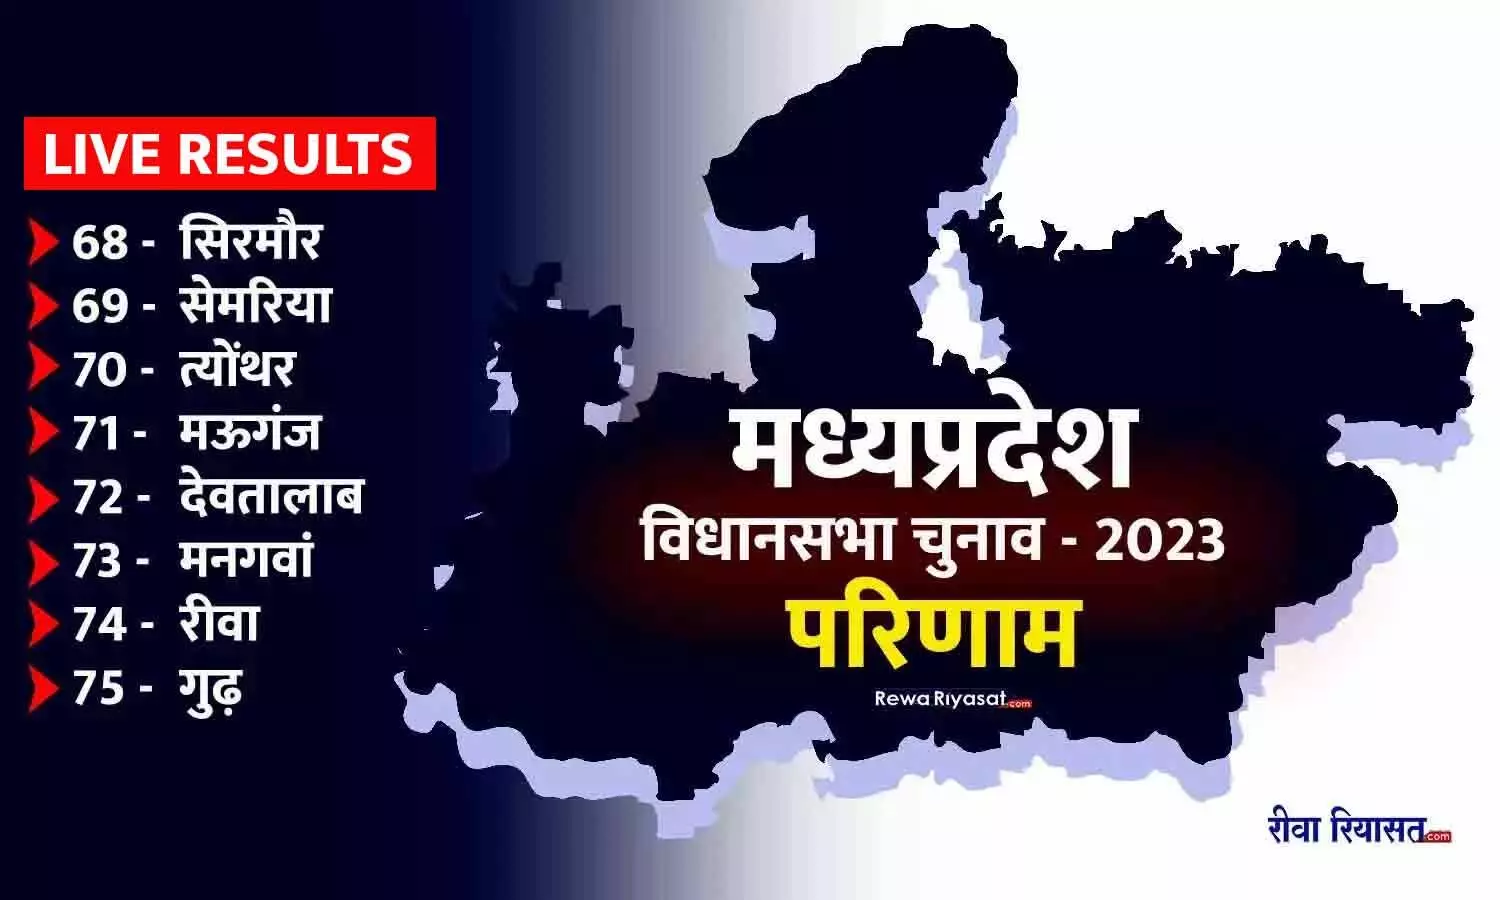 MP विधानसभा चुनाव 2023 LIVE: रीवा जिले की 7 सीटों में भाजपा की जीत, सेमरिया में जबरदस्त फाइट